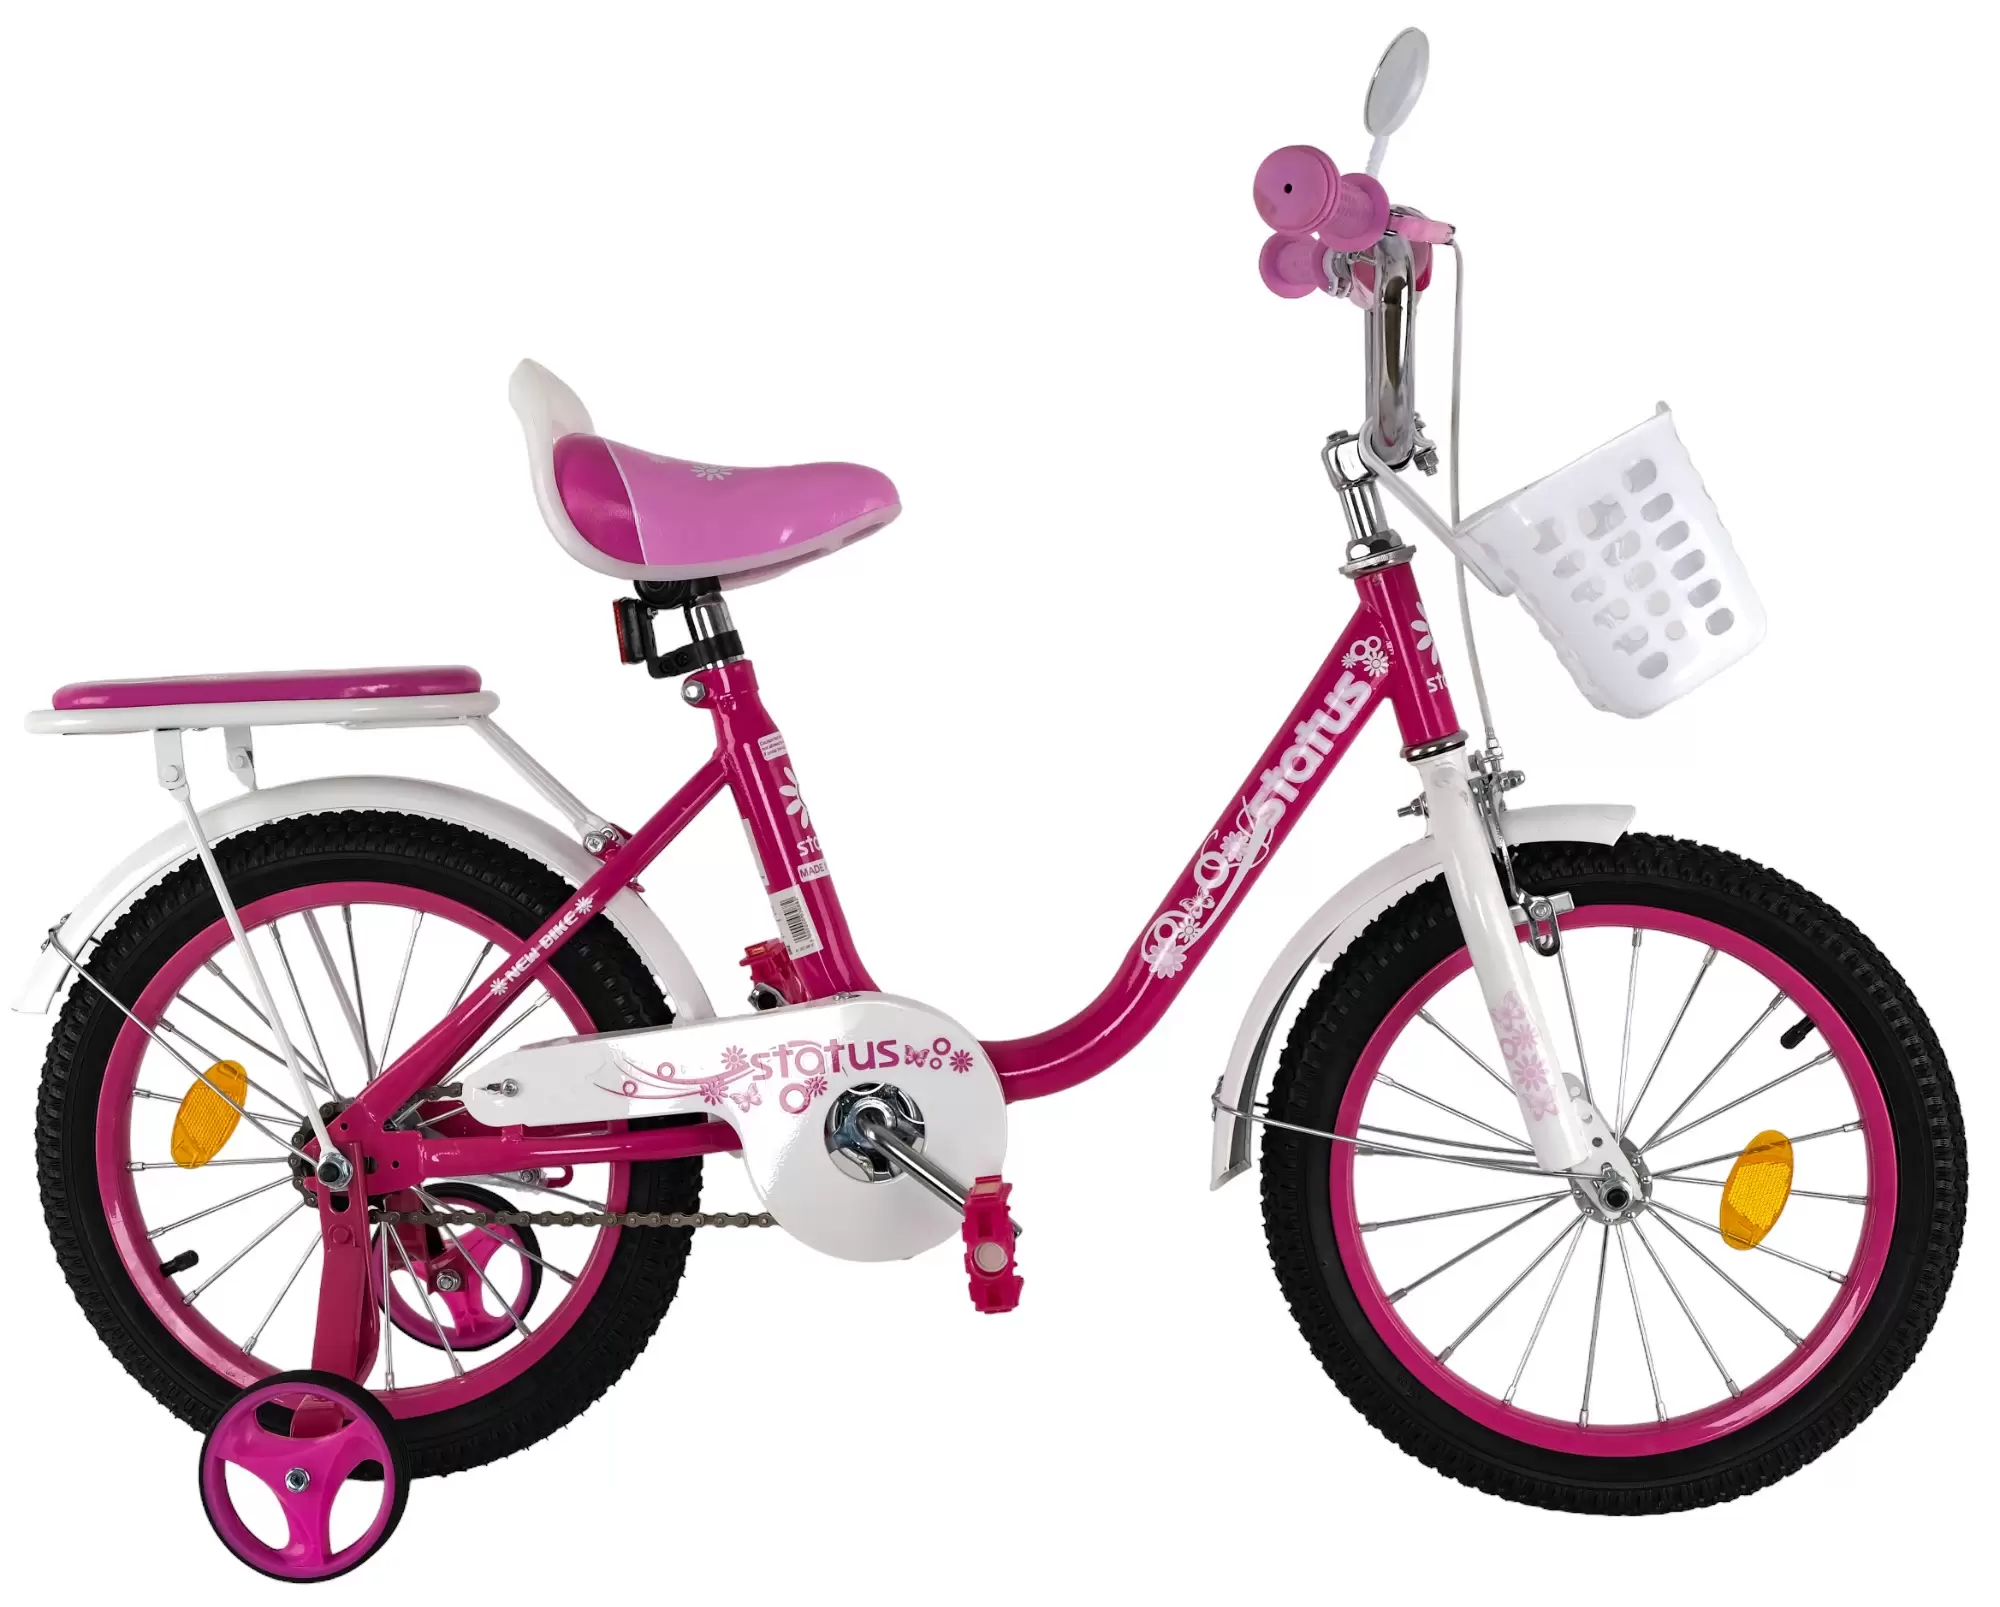 Велосипед Status 14 дюймов розовый (4 - 5 лет)